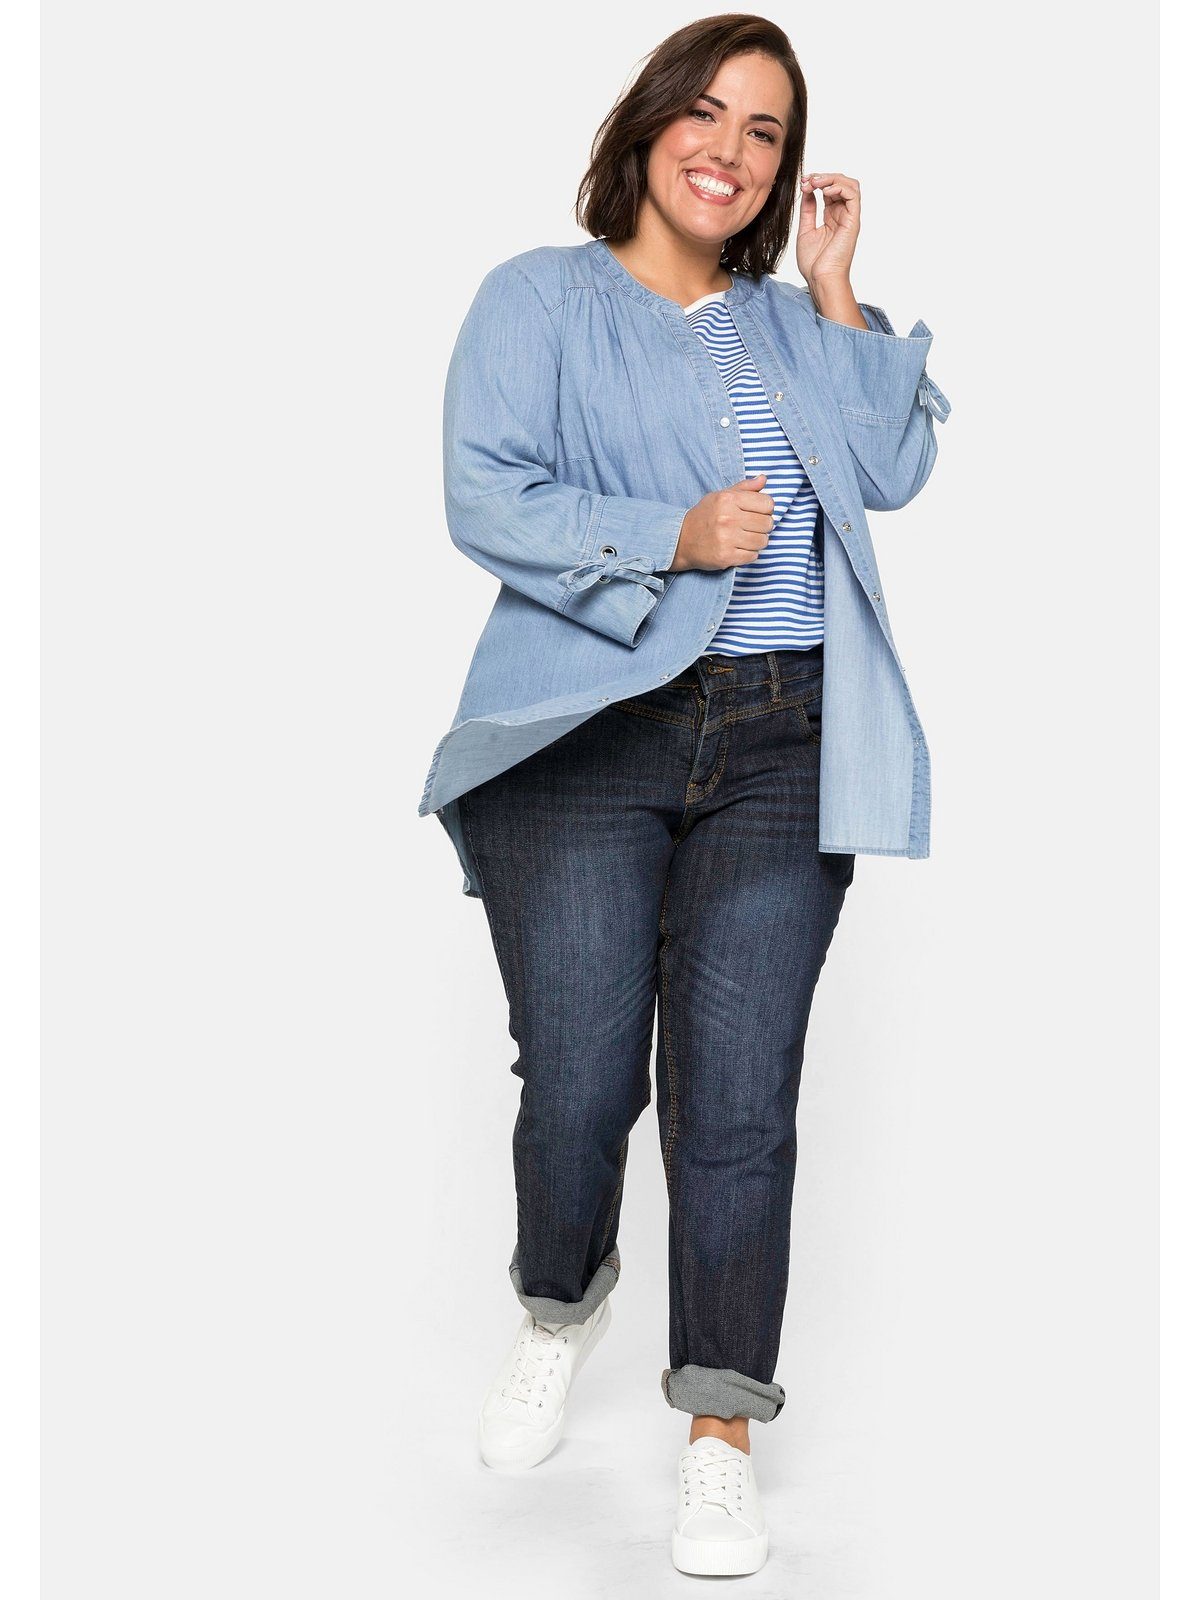 Jeans Größe 44 online kaufen | OTTO